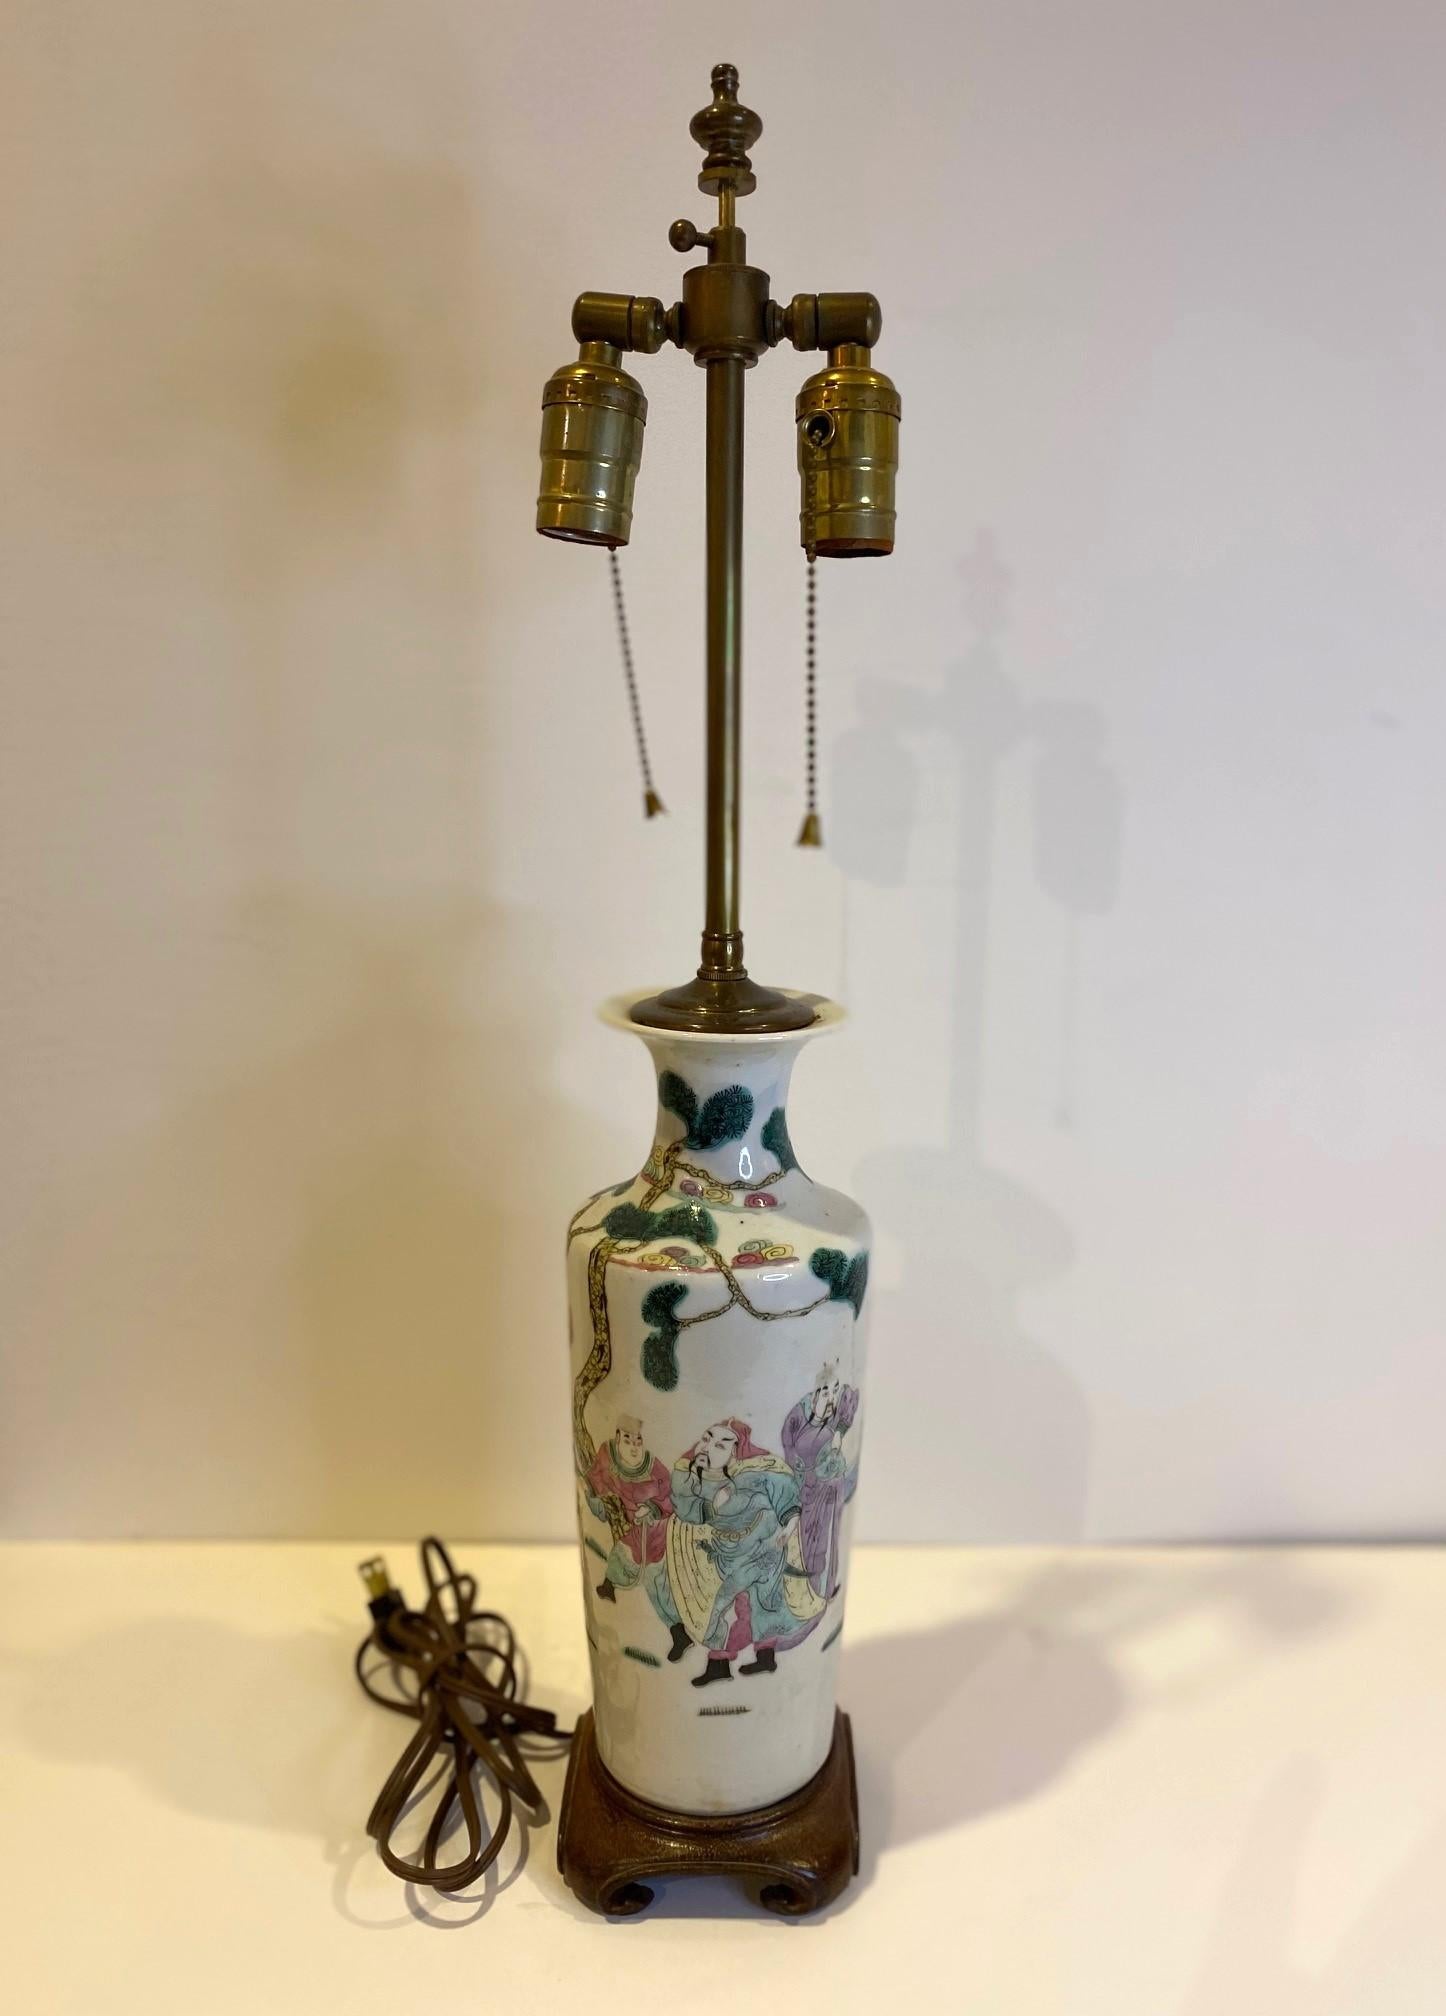 Sehr attraktive handbemalte chinesische Porzellanvasenlampe aus dem 19. Jahrhundert mit doppeltem Sockel auf gedrechseltem Formholzsockel.  Circa 1820.